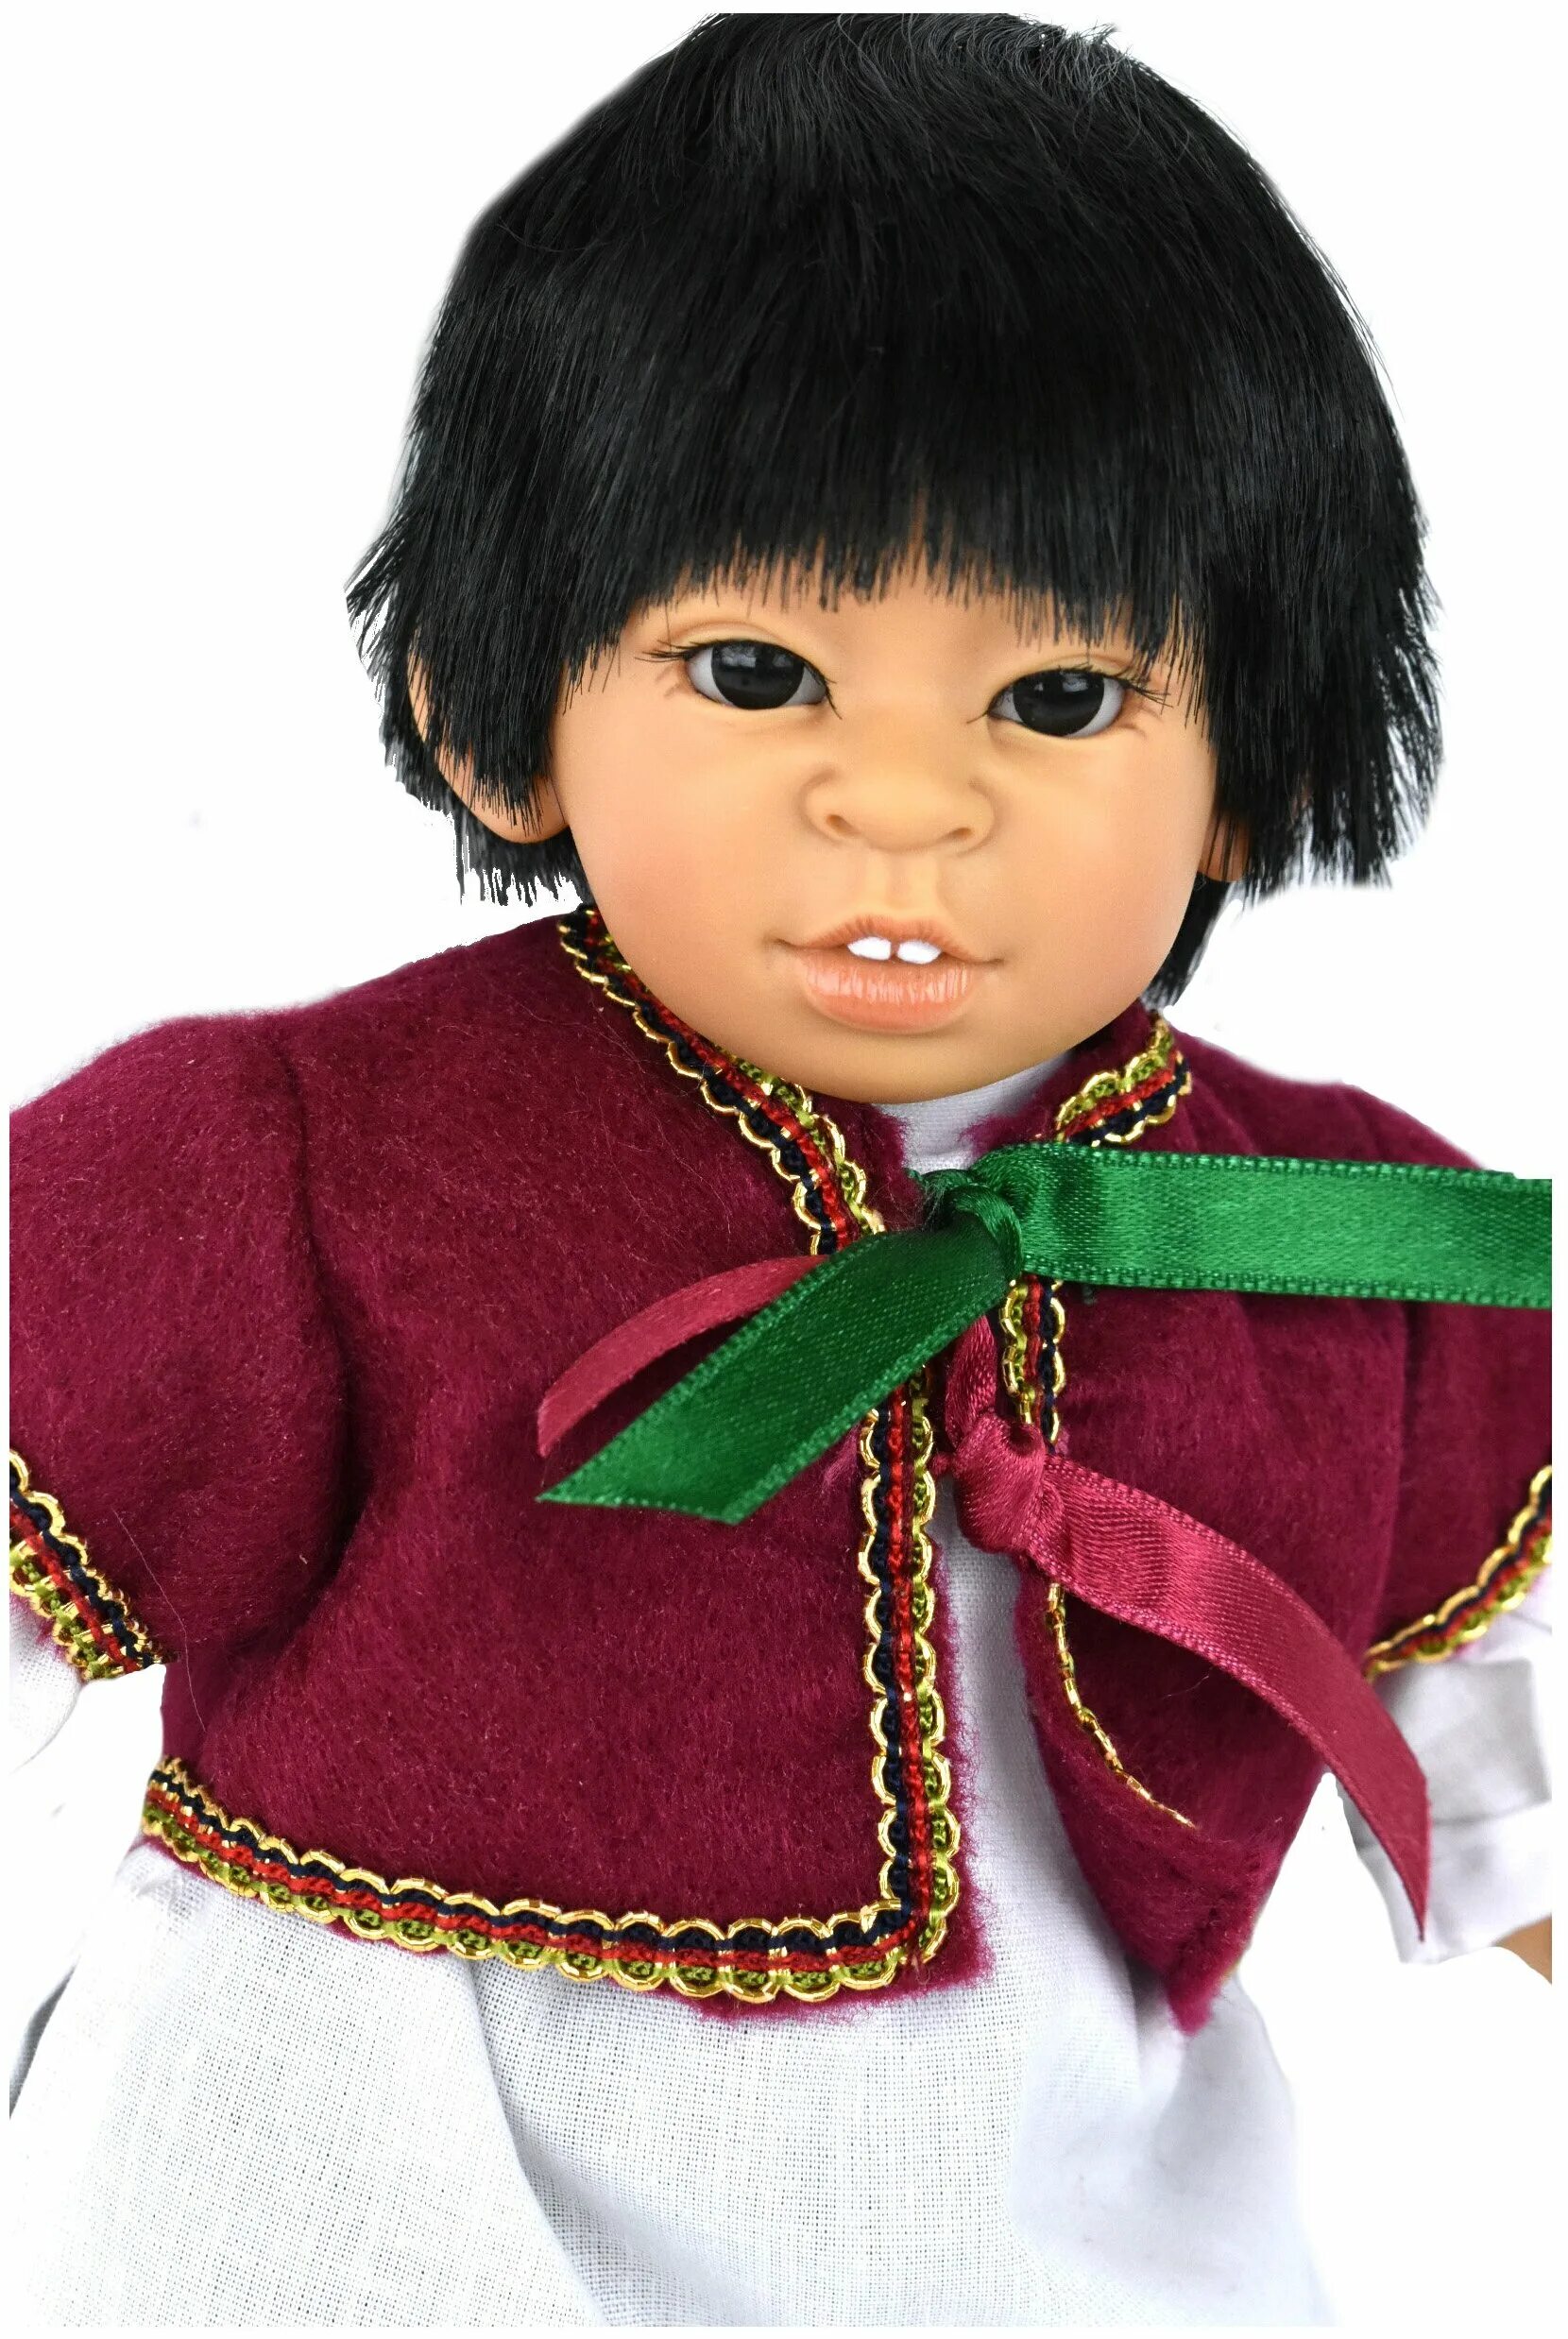 Китайские куклы мальчики. Китайские куклы. Кукла китаец. Китайская кукла мальчик. Китайская большая куклы.